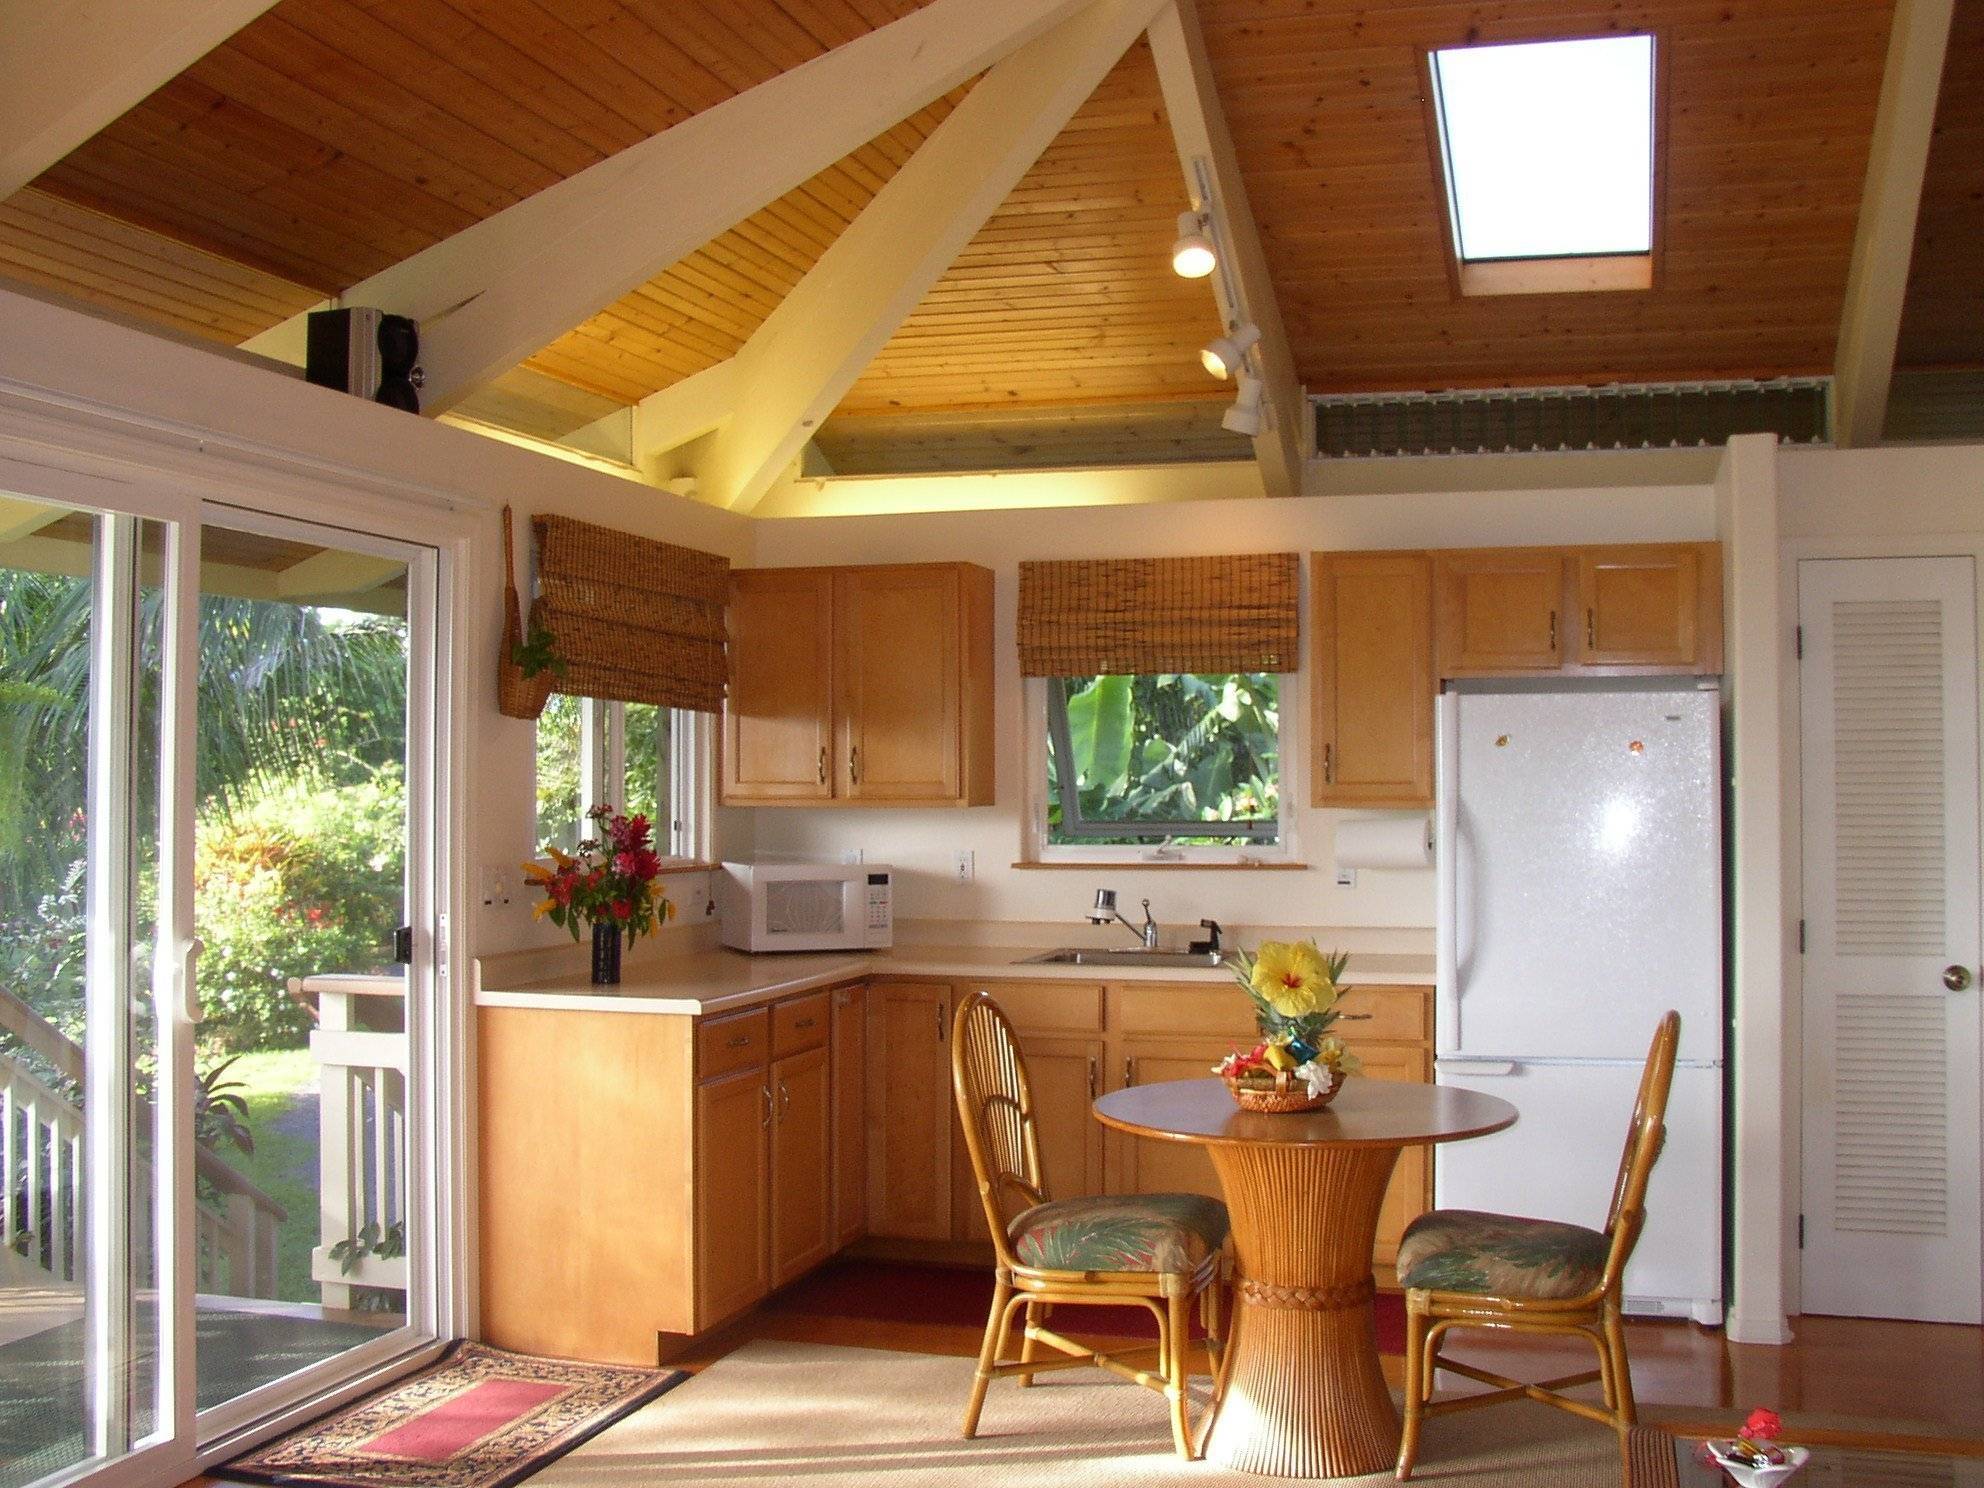 Интерьер кухни на даче (36 фото): как создать комфорт и уют